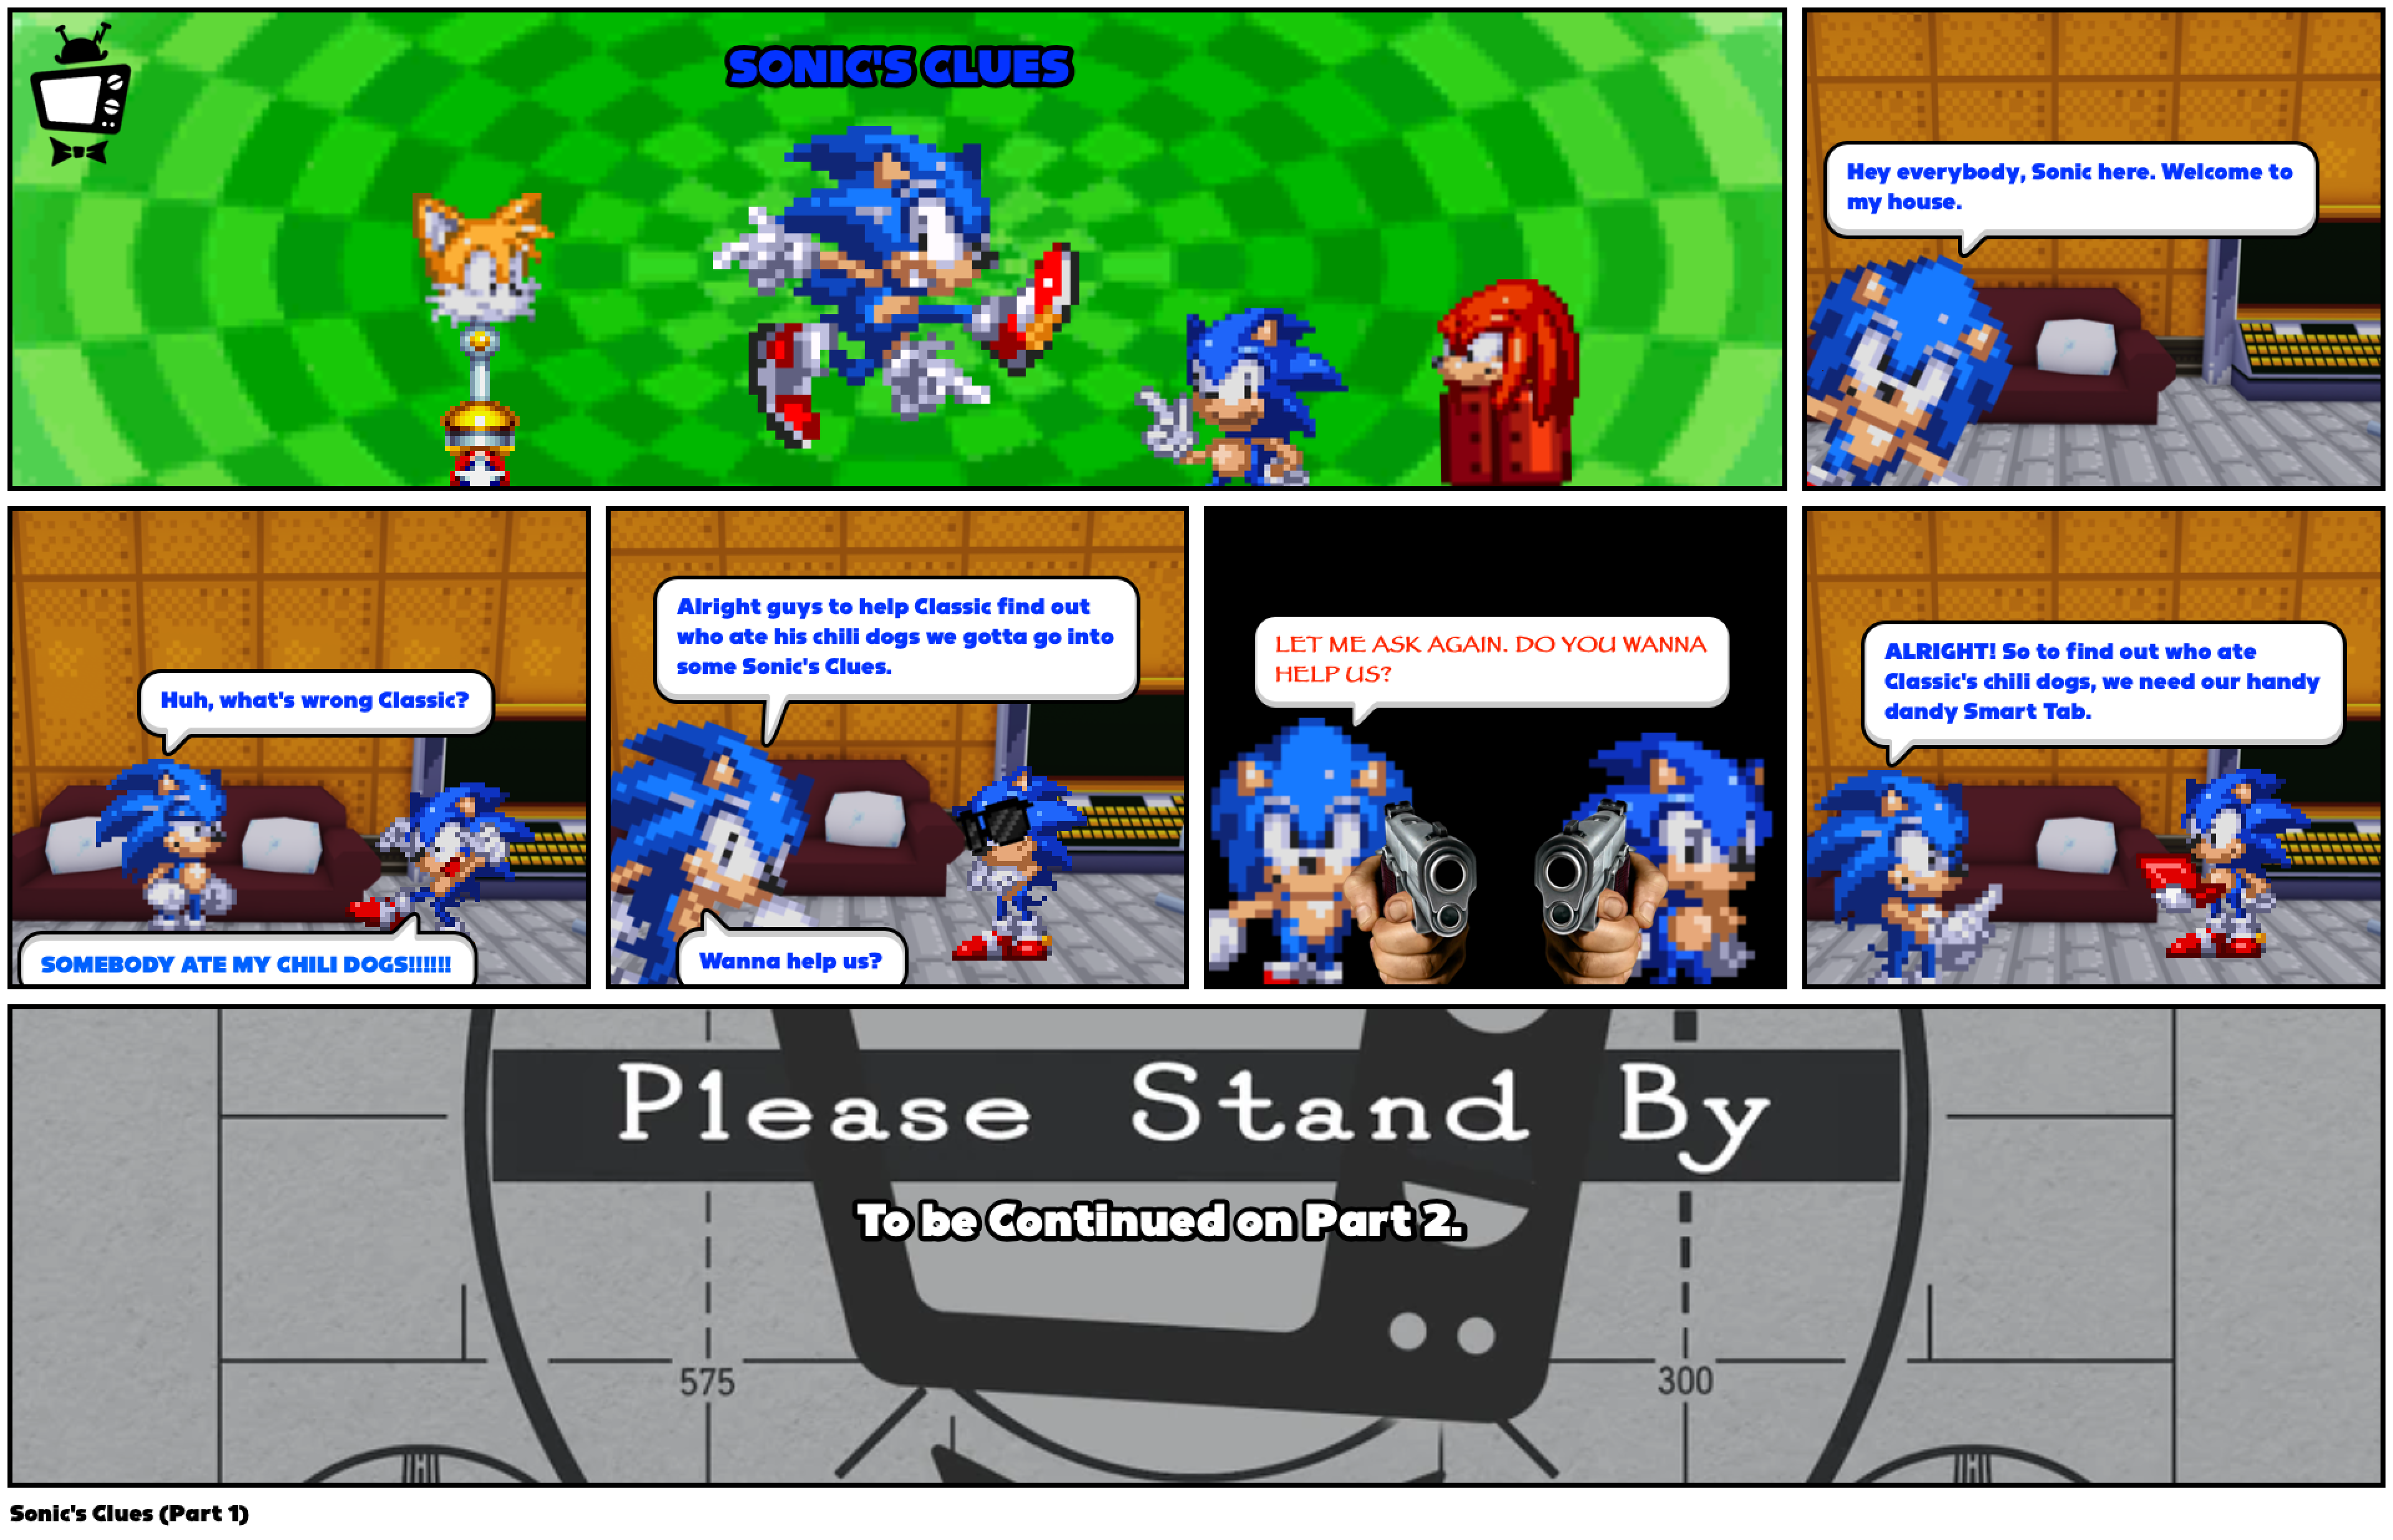 Sonic's Clues (Part 1)